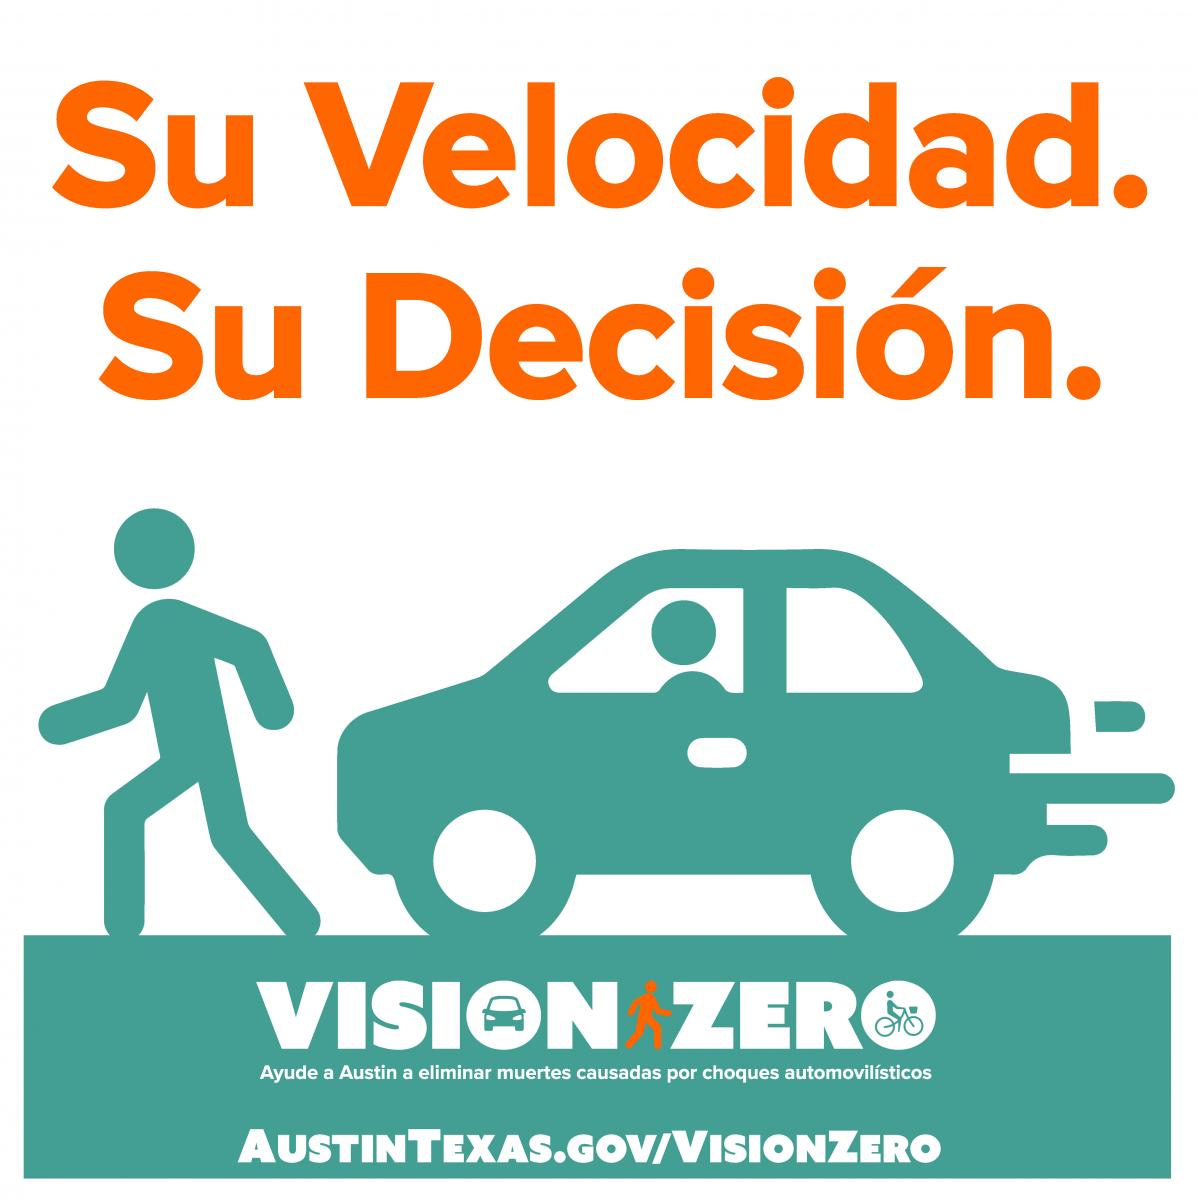 Su velocidad. Su decision. Vision Zero. Ayude a Austin a eliminar muertes causadas por choques automovilisticos. AustinTexas.gov/VisionZero.